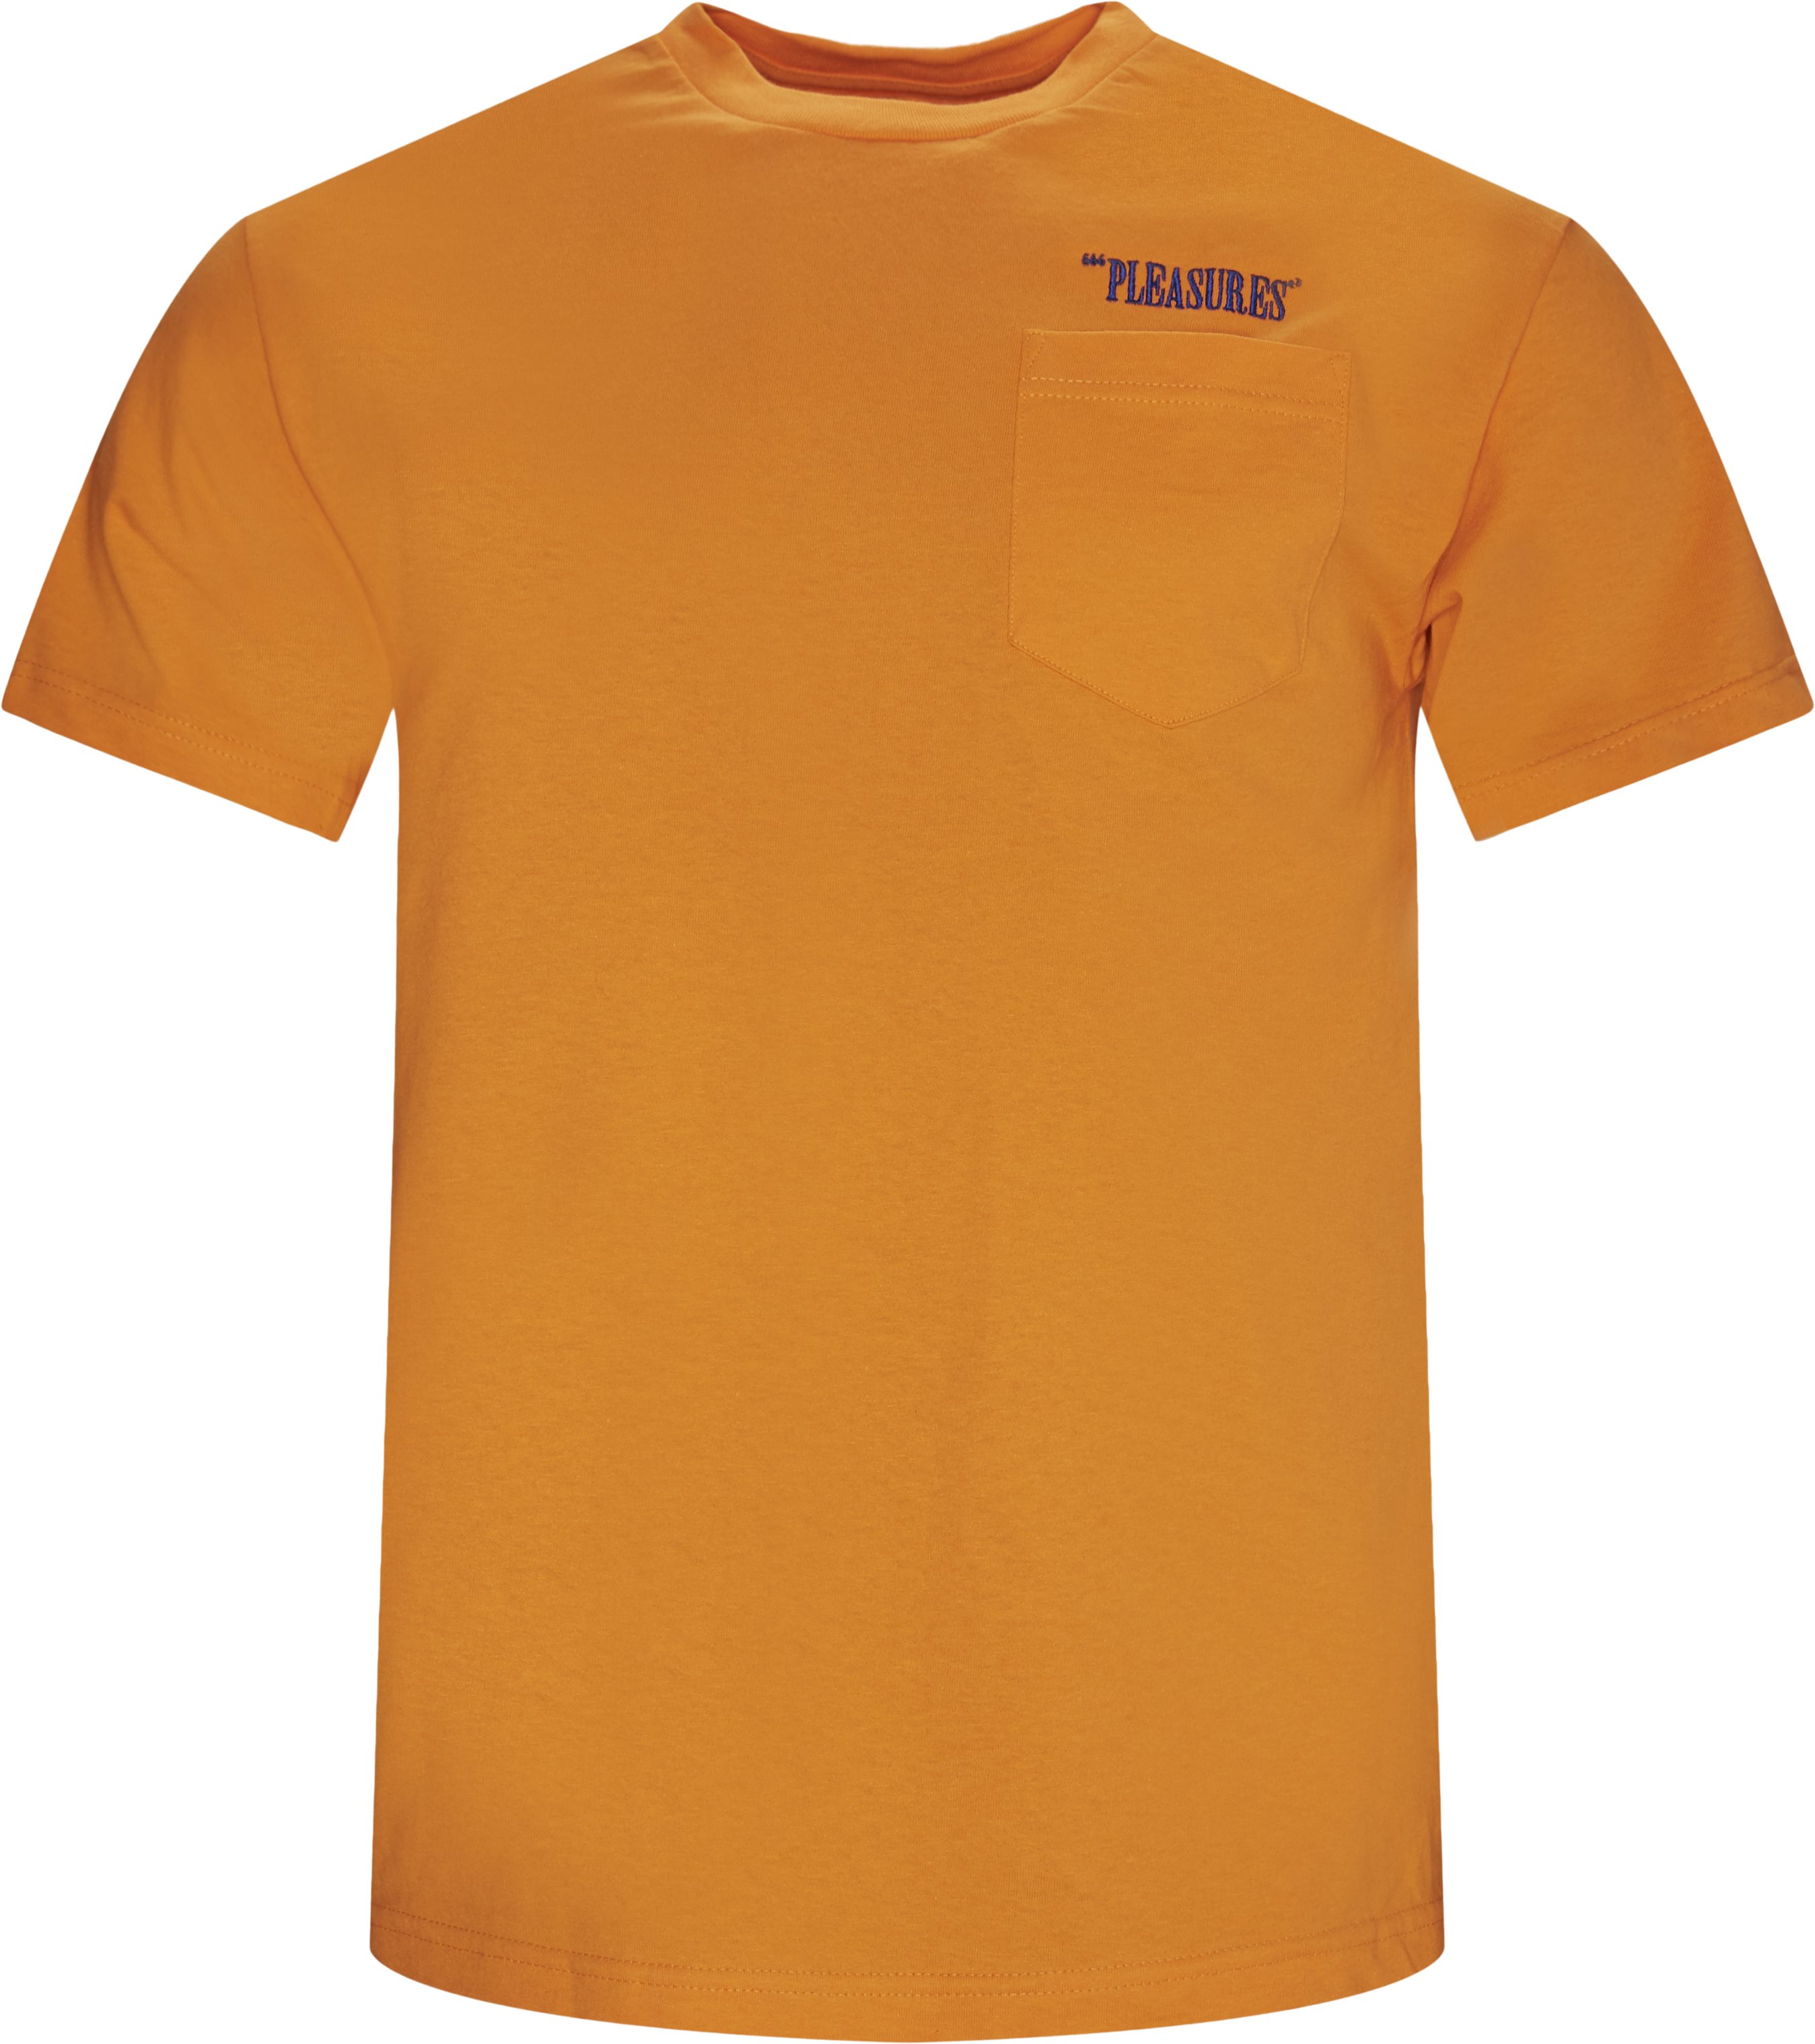 Balans Tee - T-shirts - Regular fit - Orange